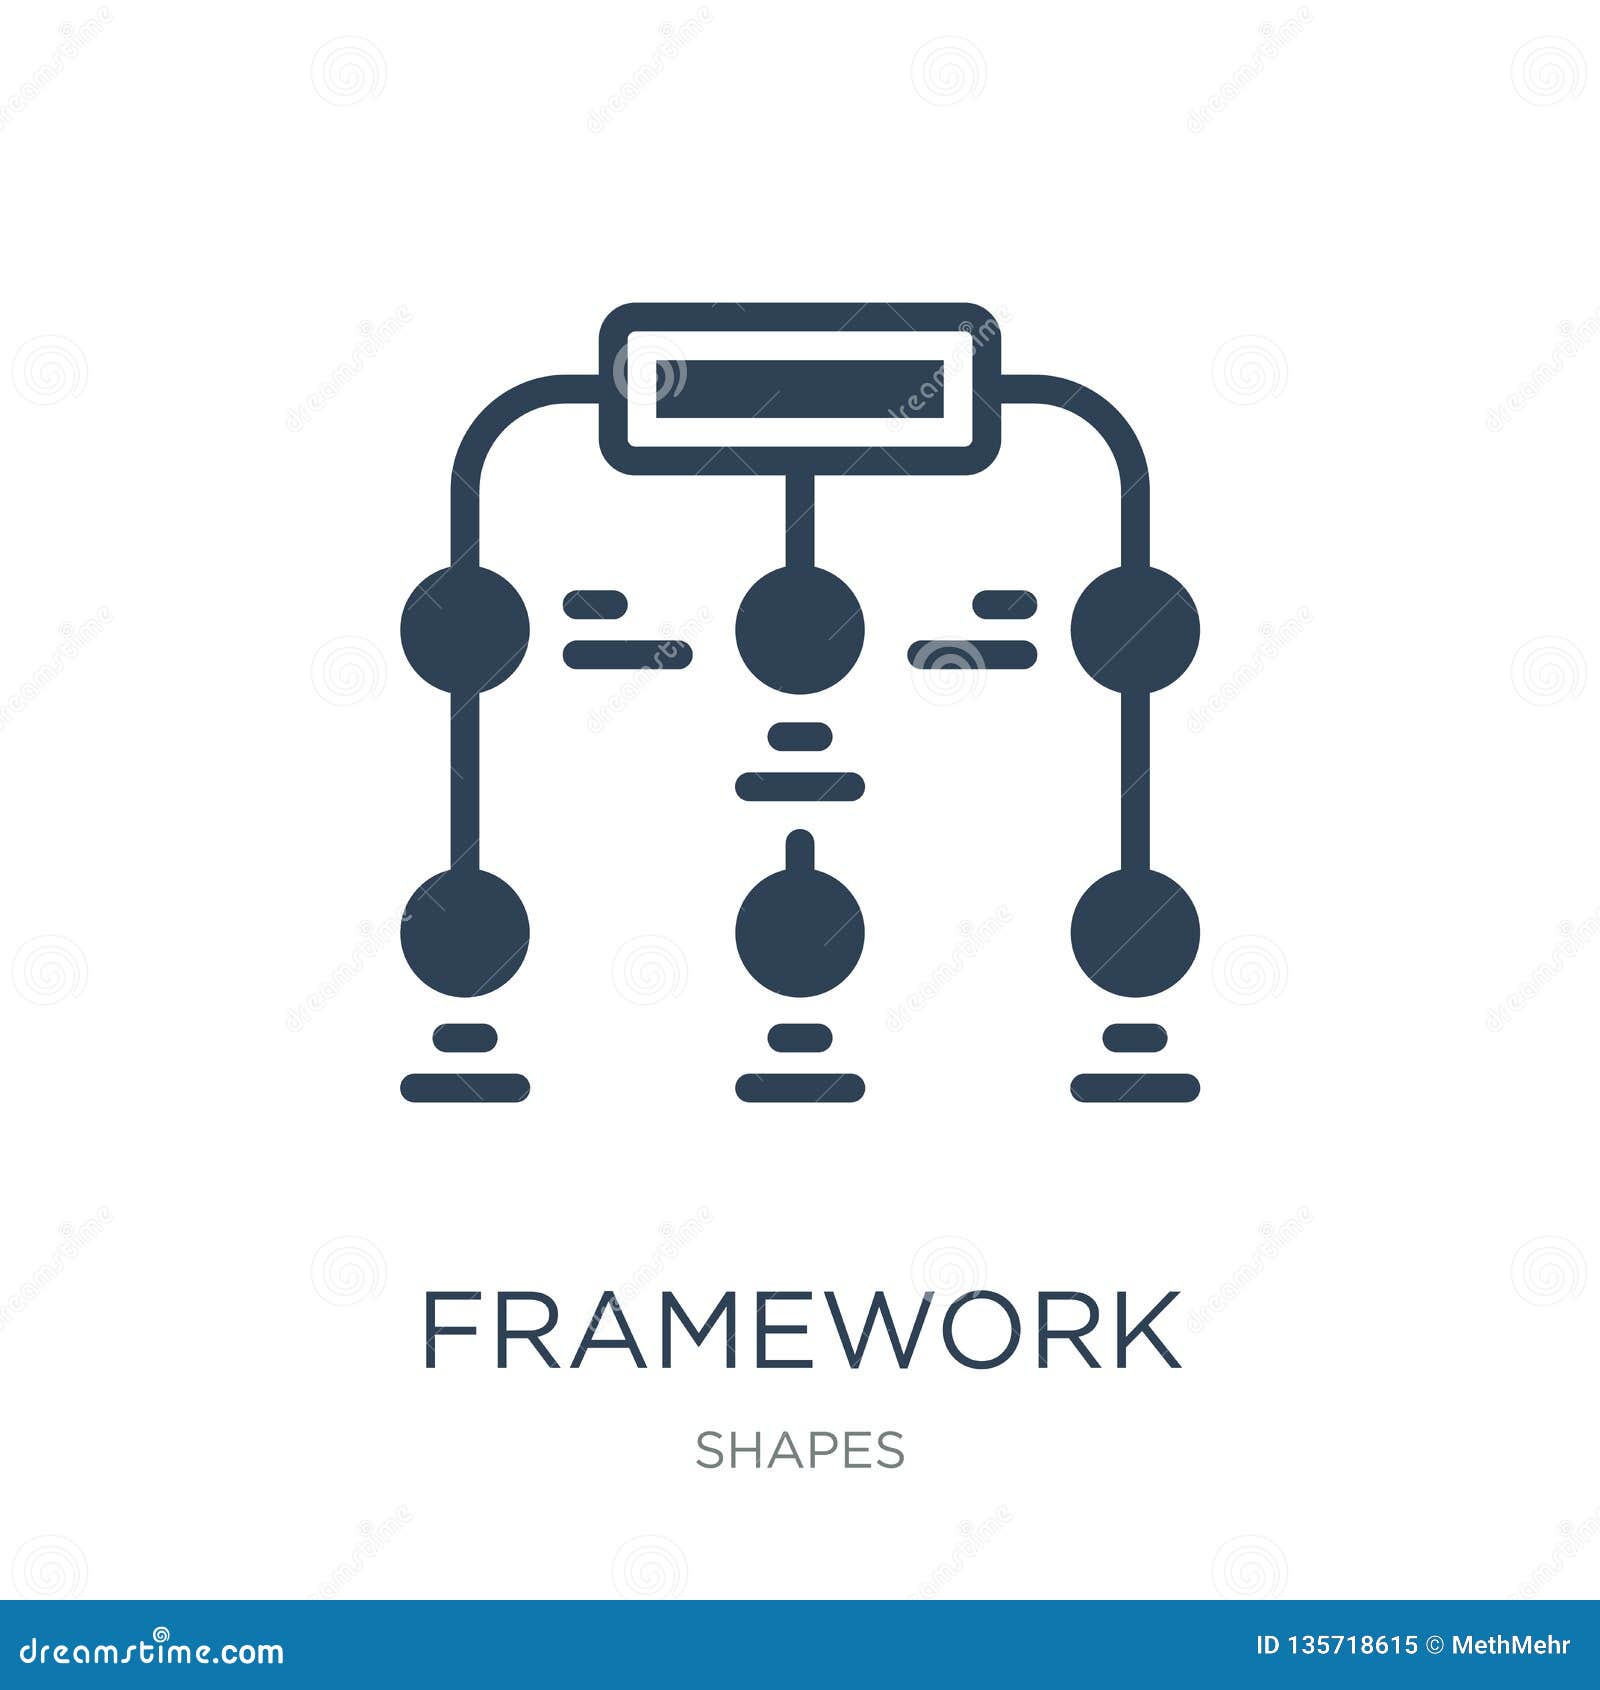 Dxf Files Framework Design File Cutting File Vector Files Framework Svg Eps Instant Download Framework Silhouette Png and Jpeg Logo